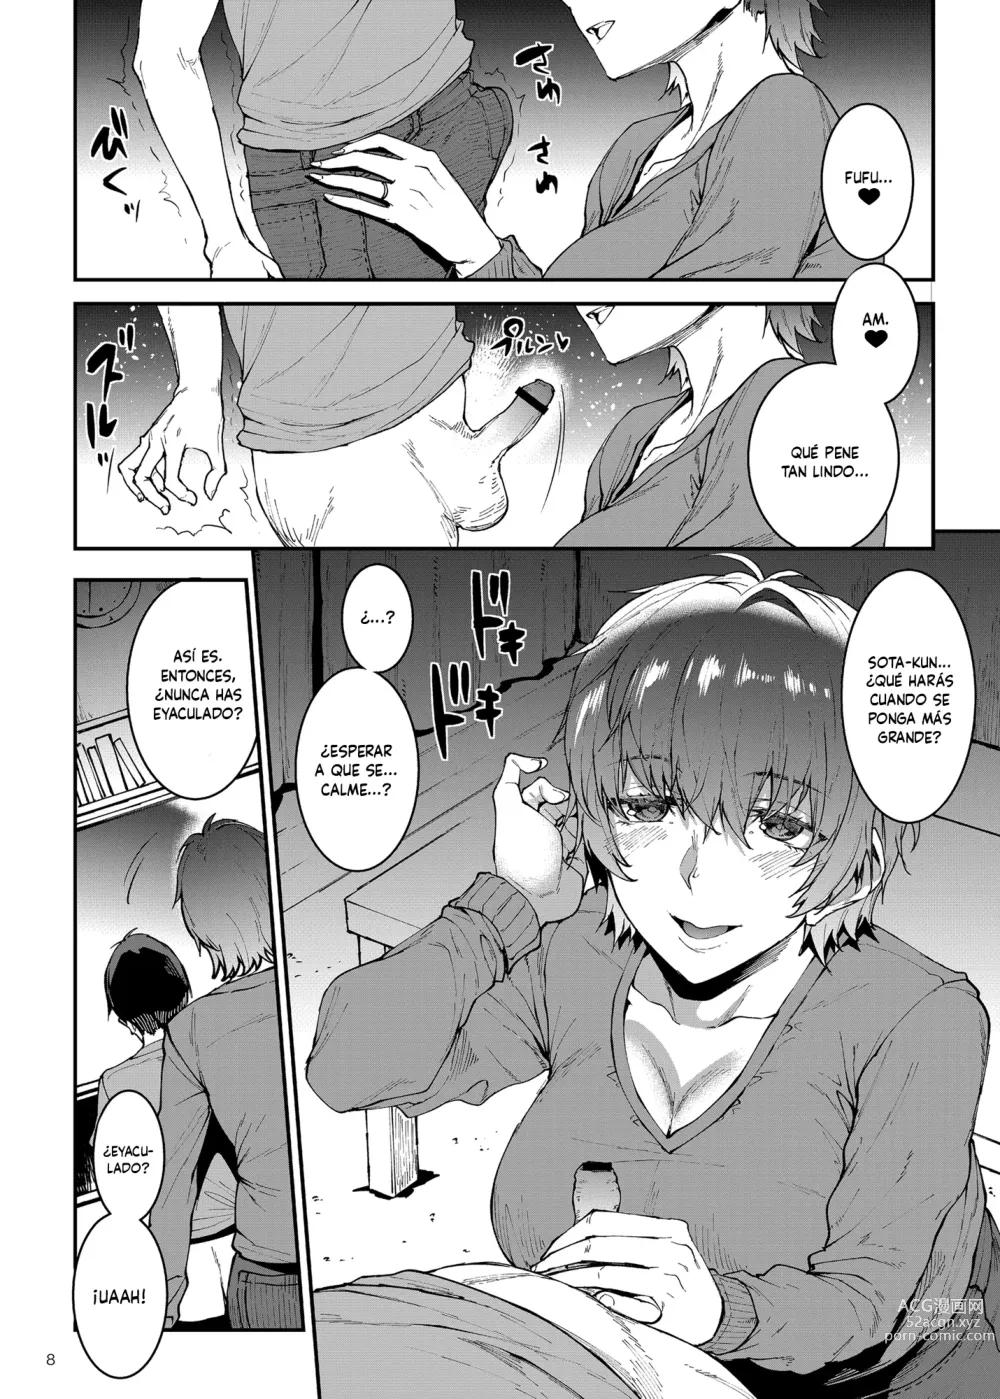 Page 8 of doujinshi El Condominio De Las Madres 〜Capítulo 1 Departamento #305 Mika Hiiragi (36)〜